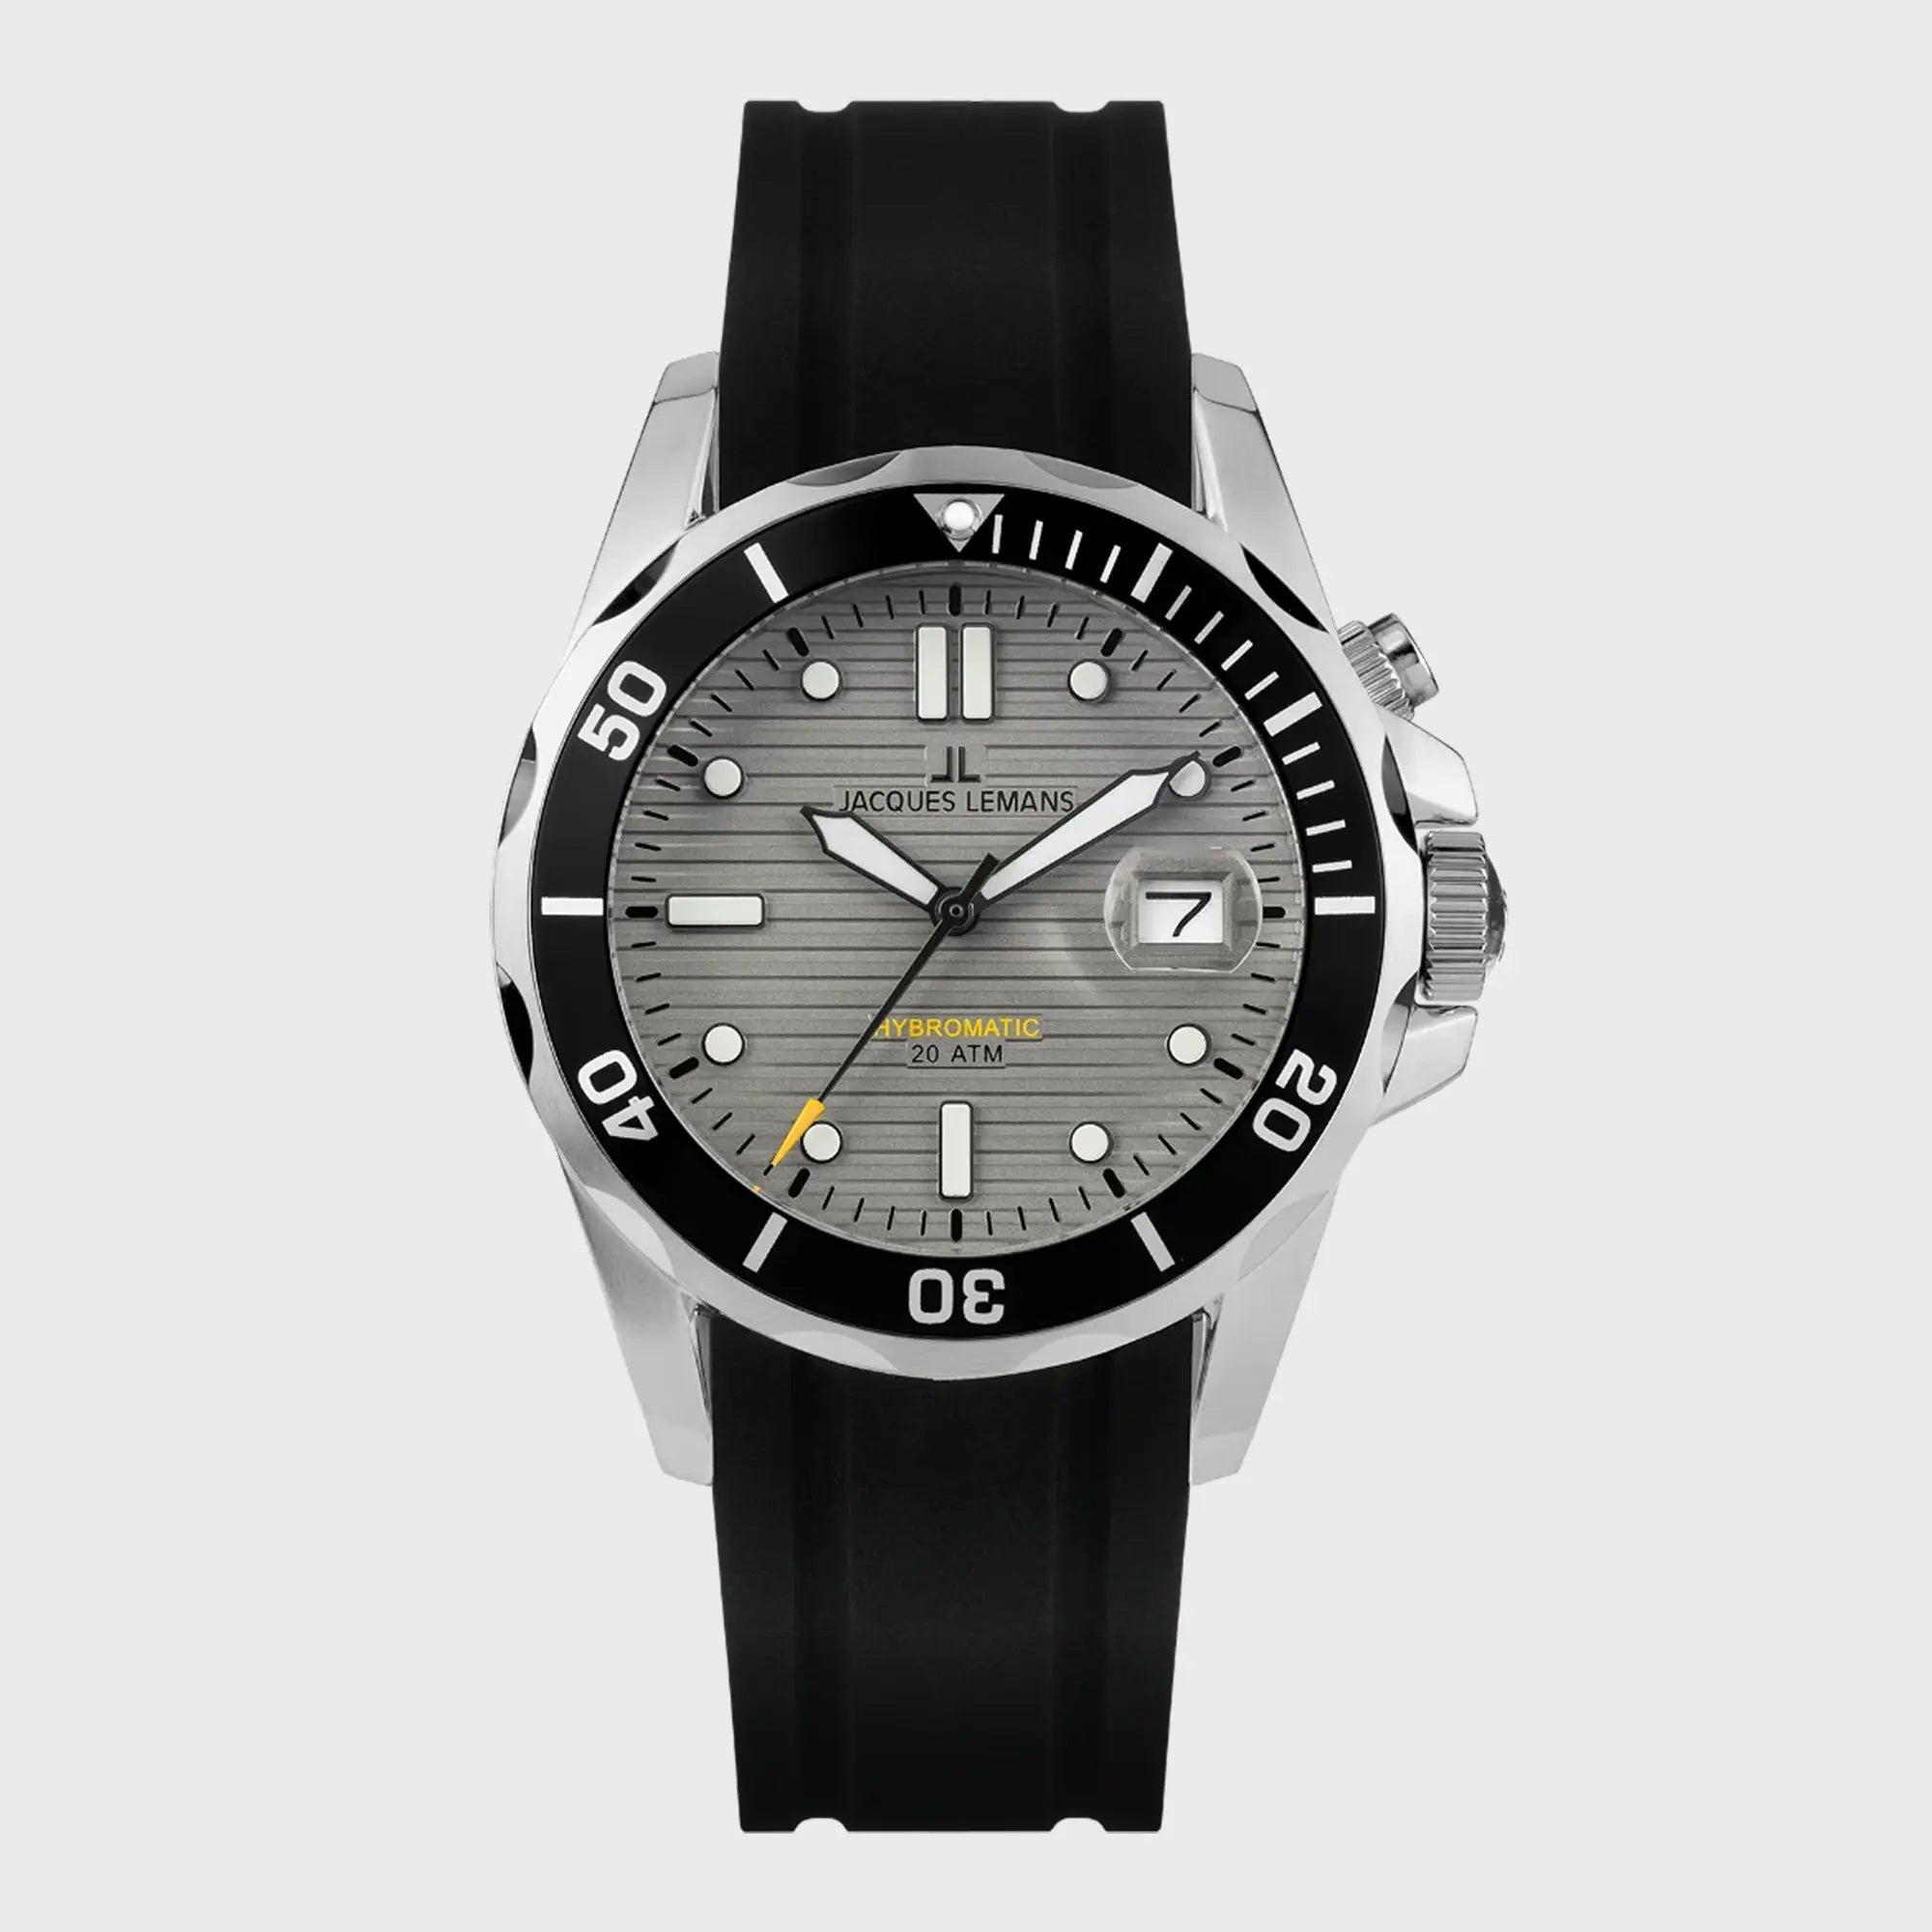 Frontale Ansicht der Jacques Lemans Uhr "Hybromatic" mit grauem Zifferblatt und schwarzen Kautschuk-Band